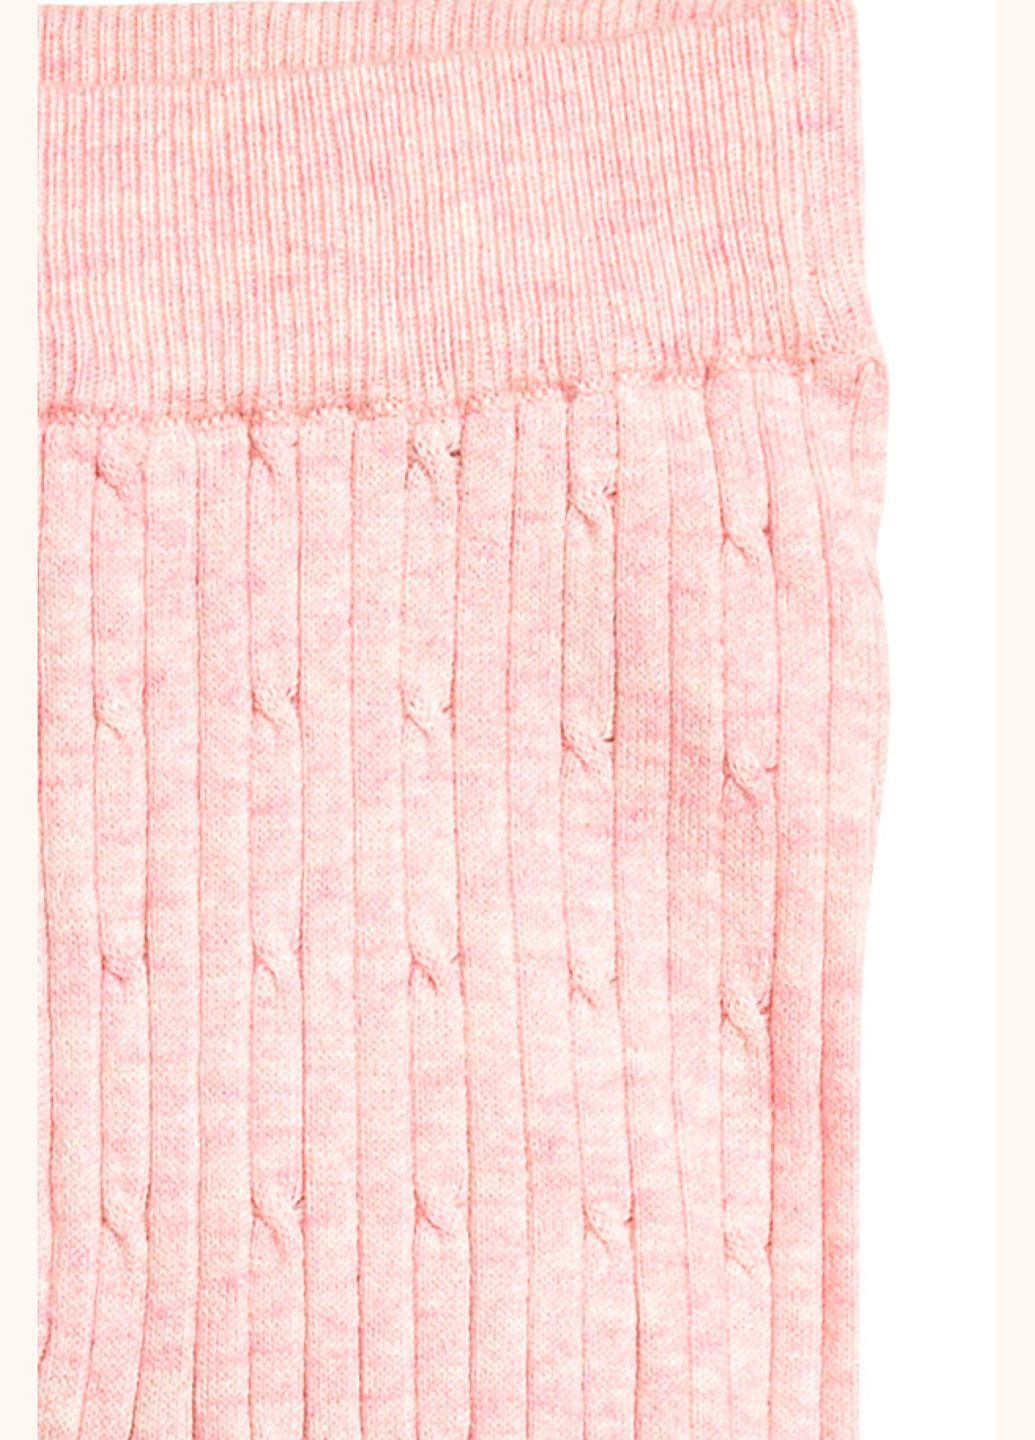 Розовые демисезонные детские леггинсы в рубчик для девочки 104 размер розовые 0389963002 H&M